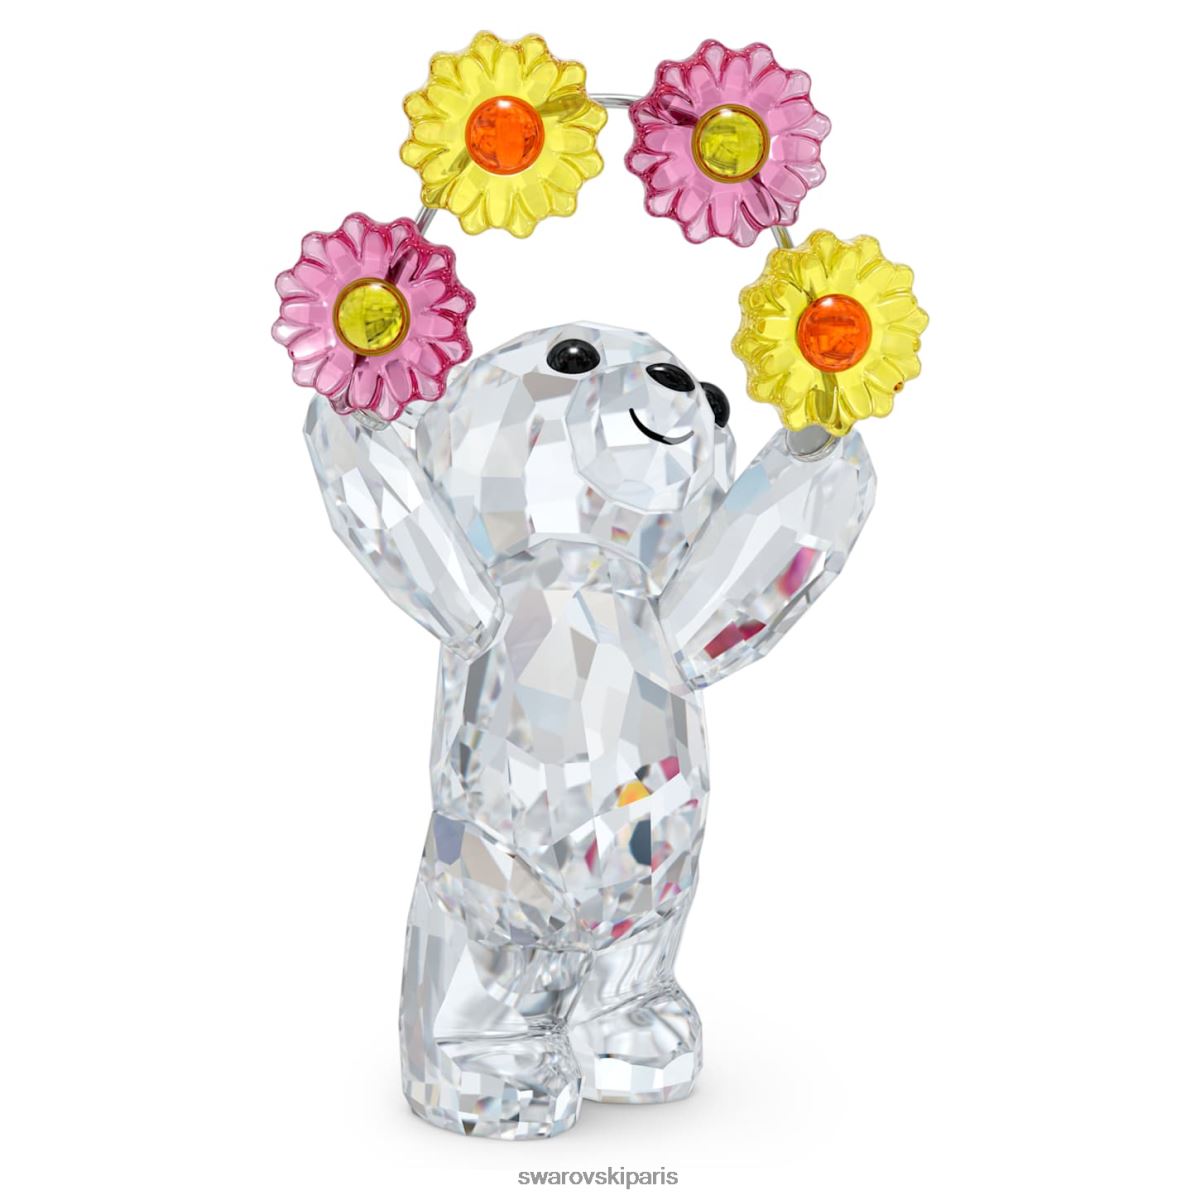 décorations Swarovski Kris Bear Springtime Feelings édition en ligne collection RZD0XJ1586